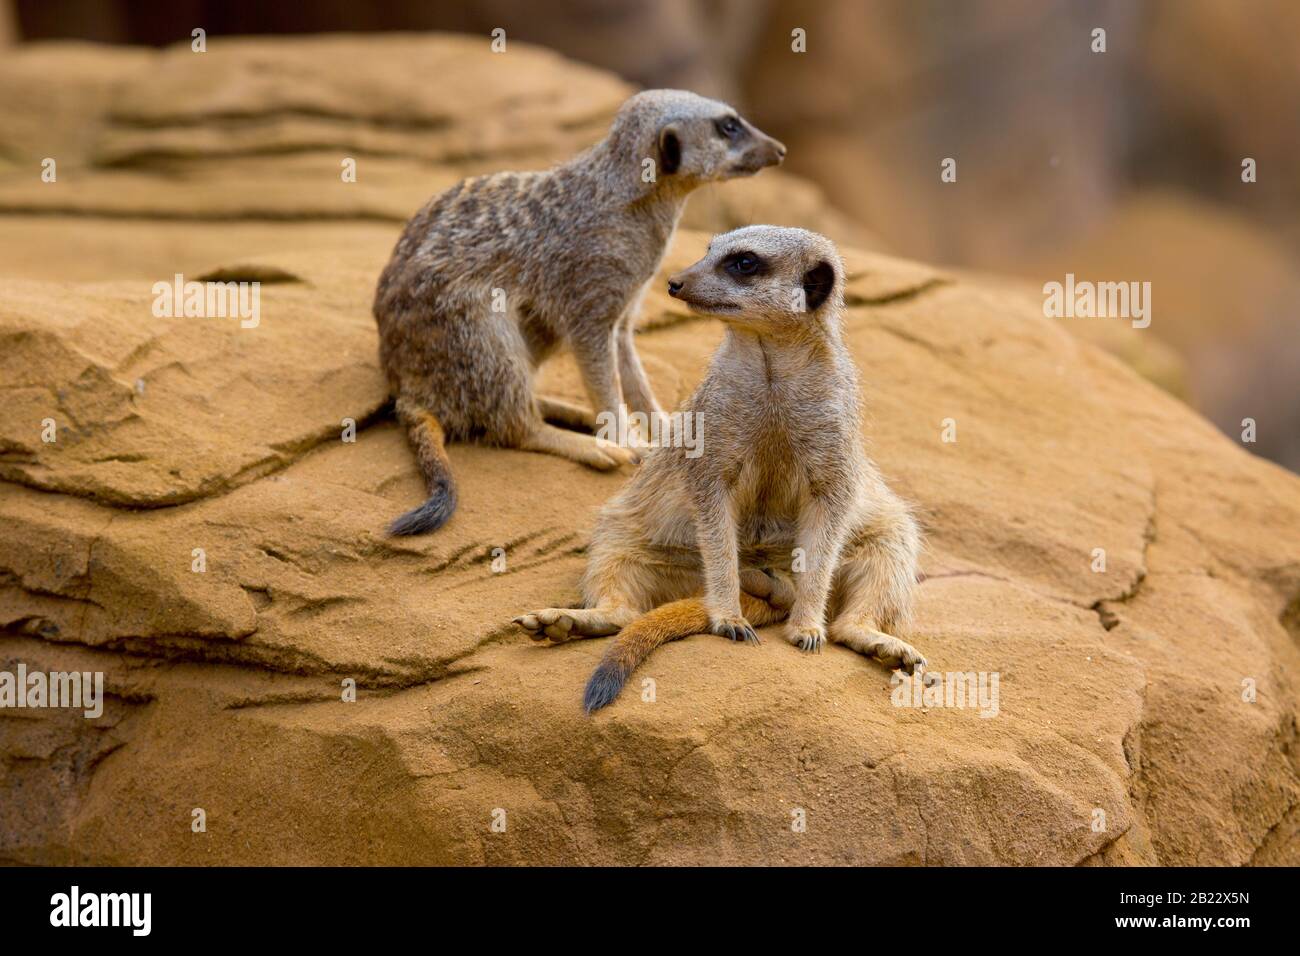 Two meerkats looking in opposite directions Stock Photo